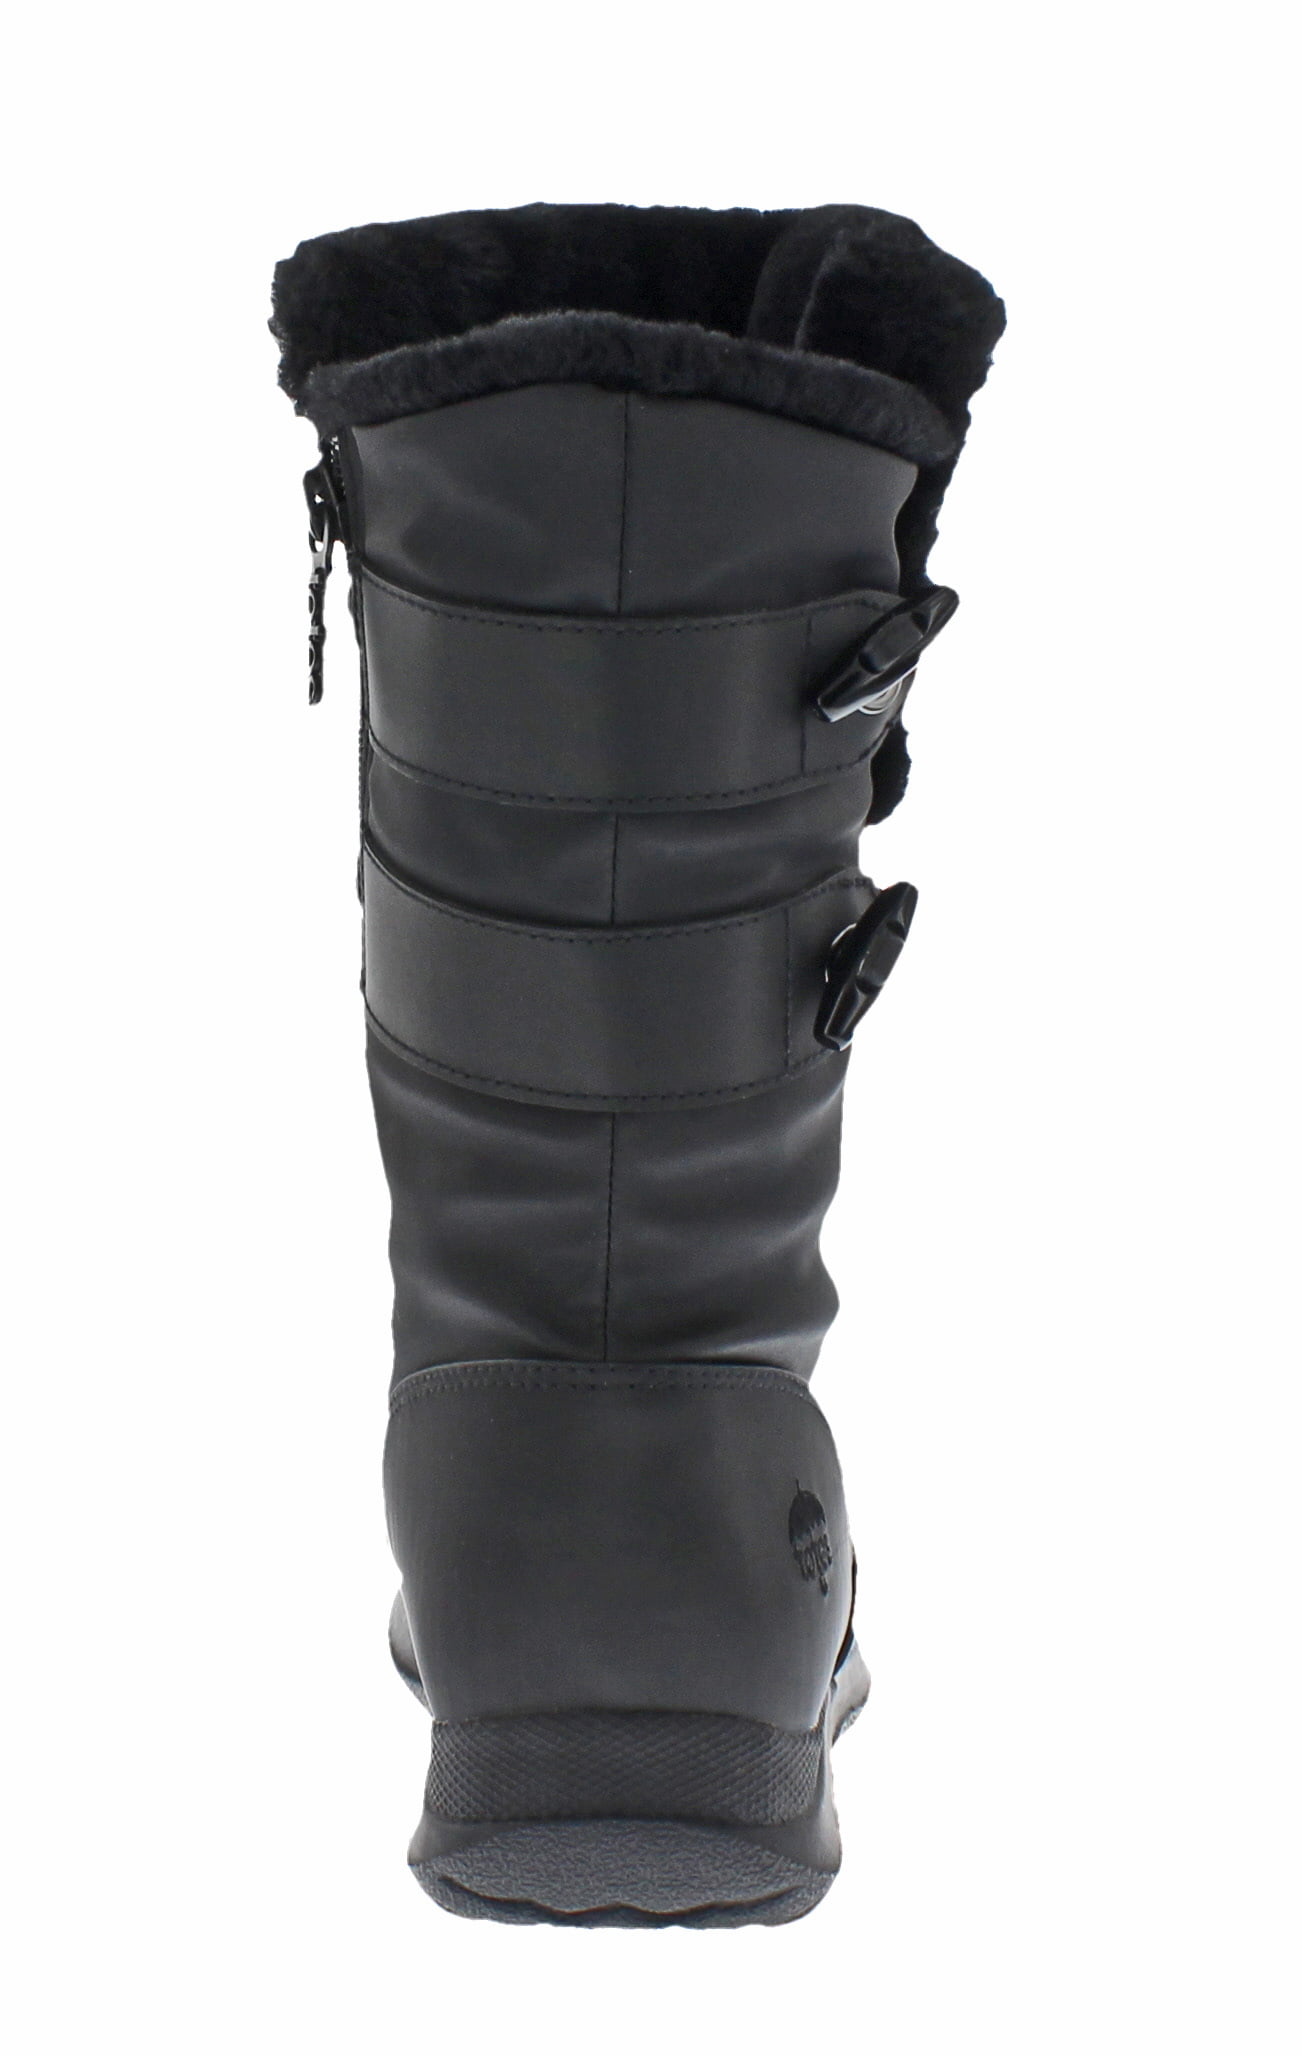 totes jill women's waterproof winter boots